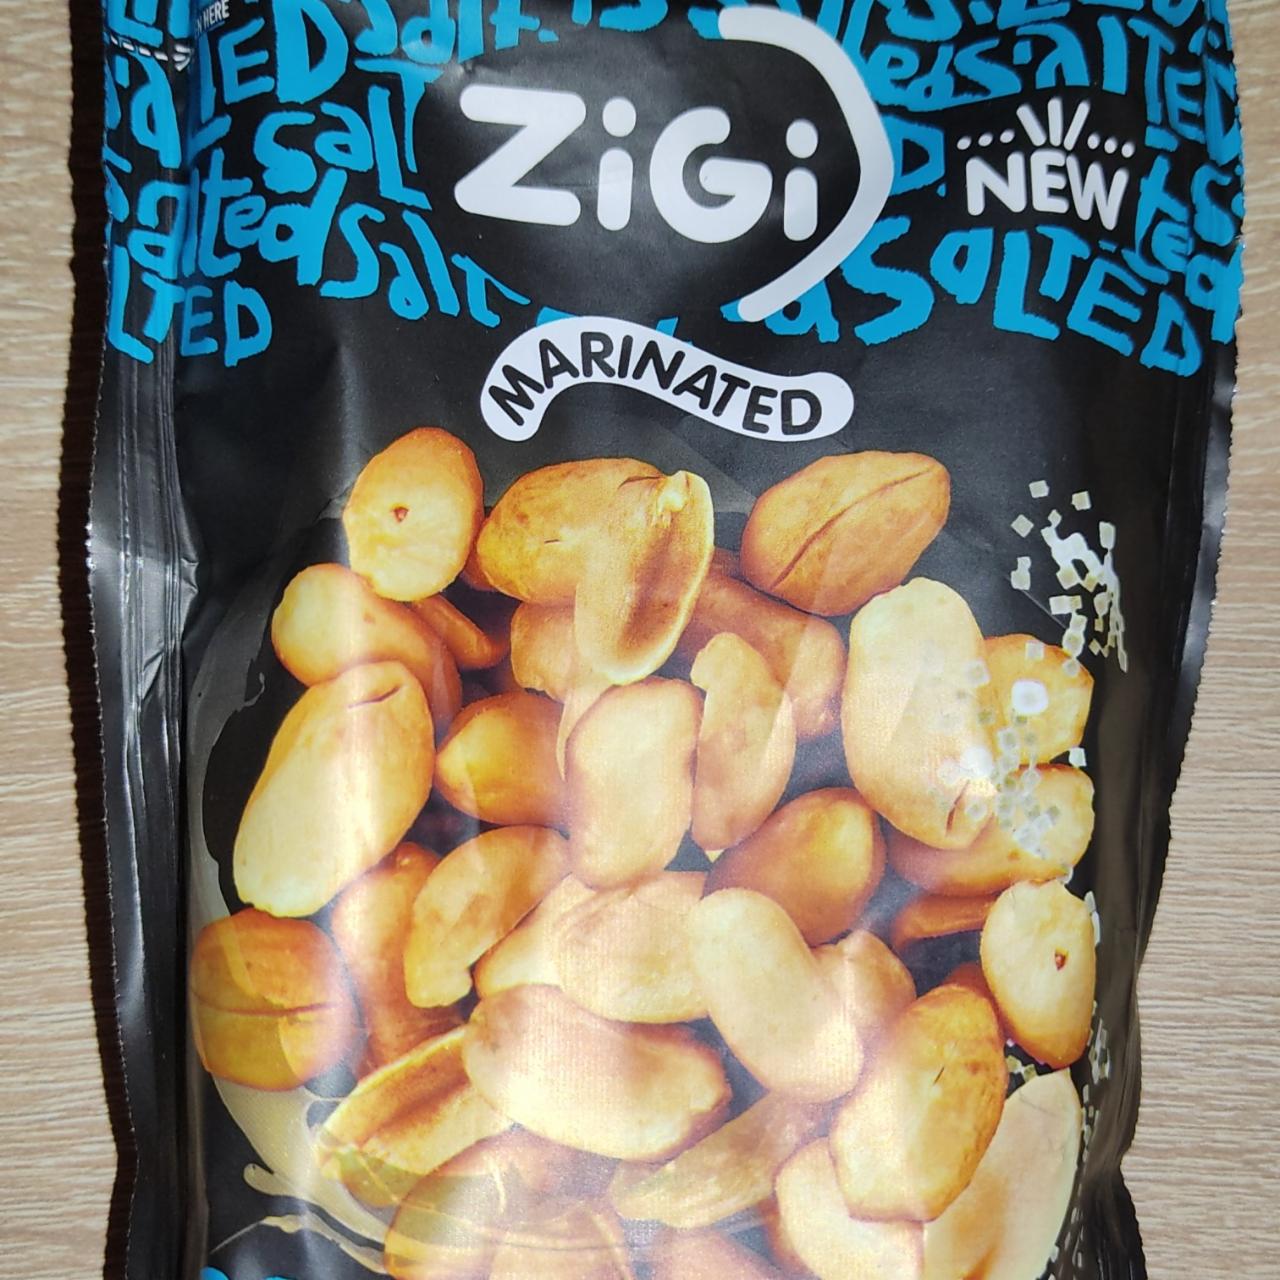 Fotografie - Marinated salted peanuts Zigi